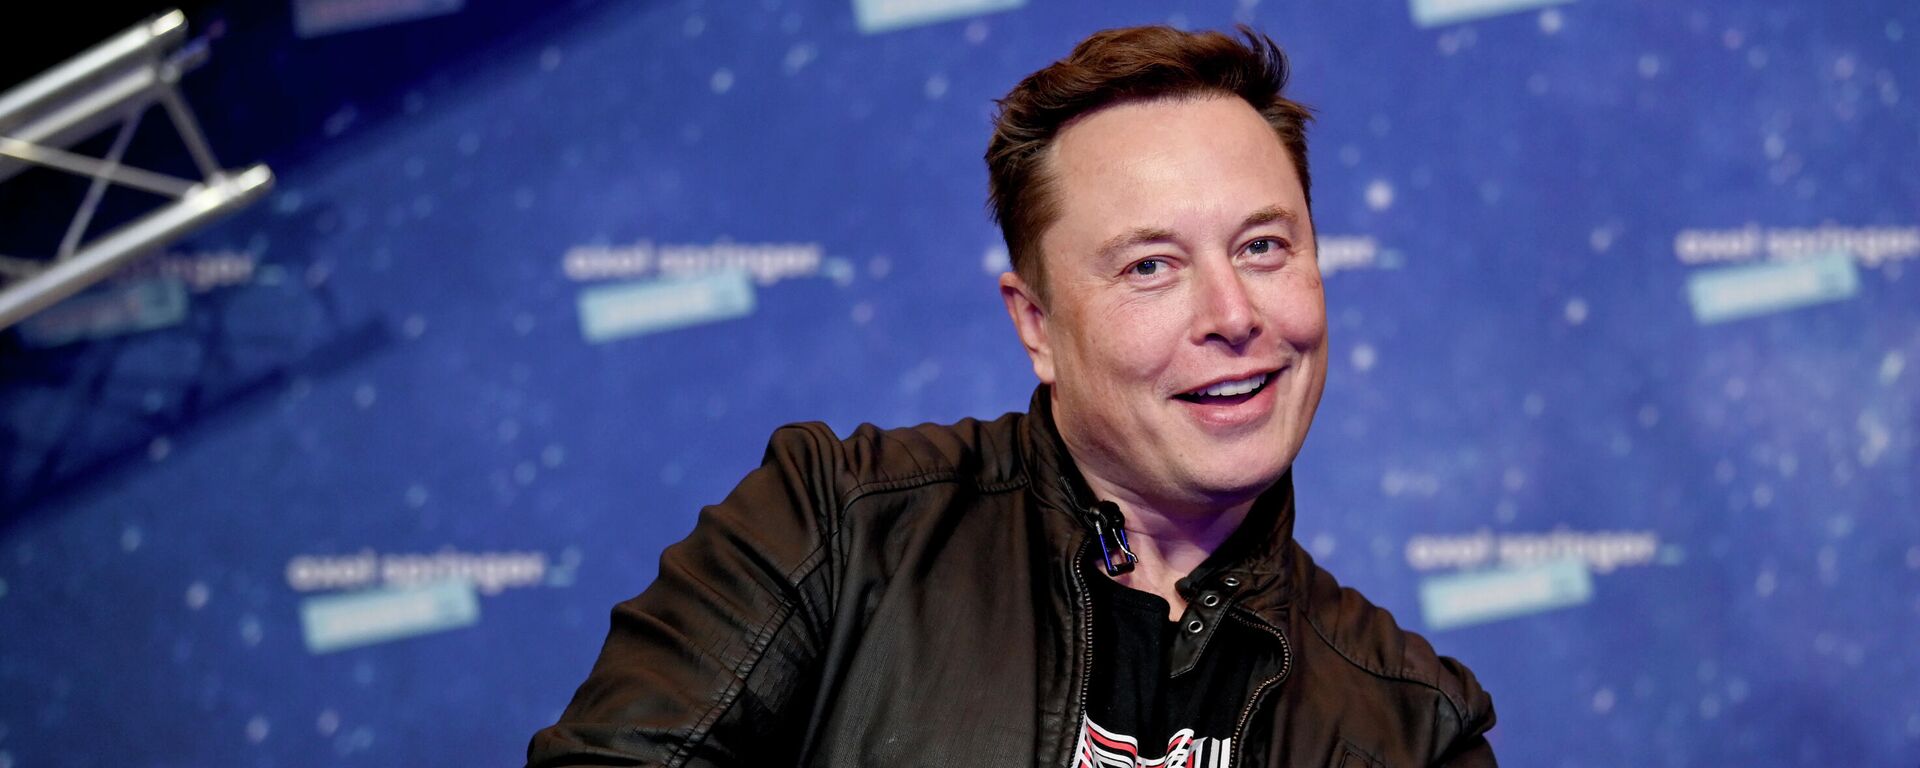 Elon Musk, CEO de Tesla y SpaceX - Sputnik Mundo, 1920, 15.12.2021